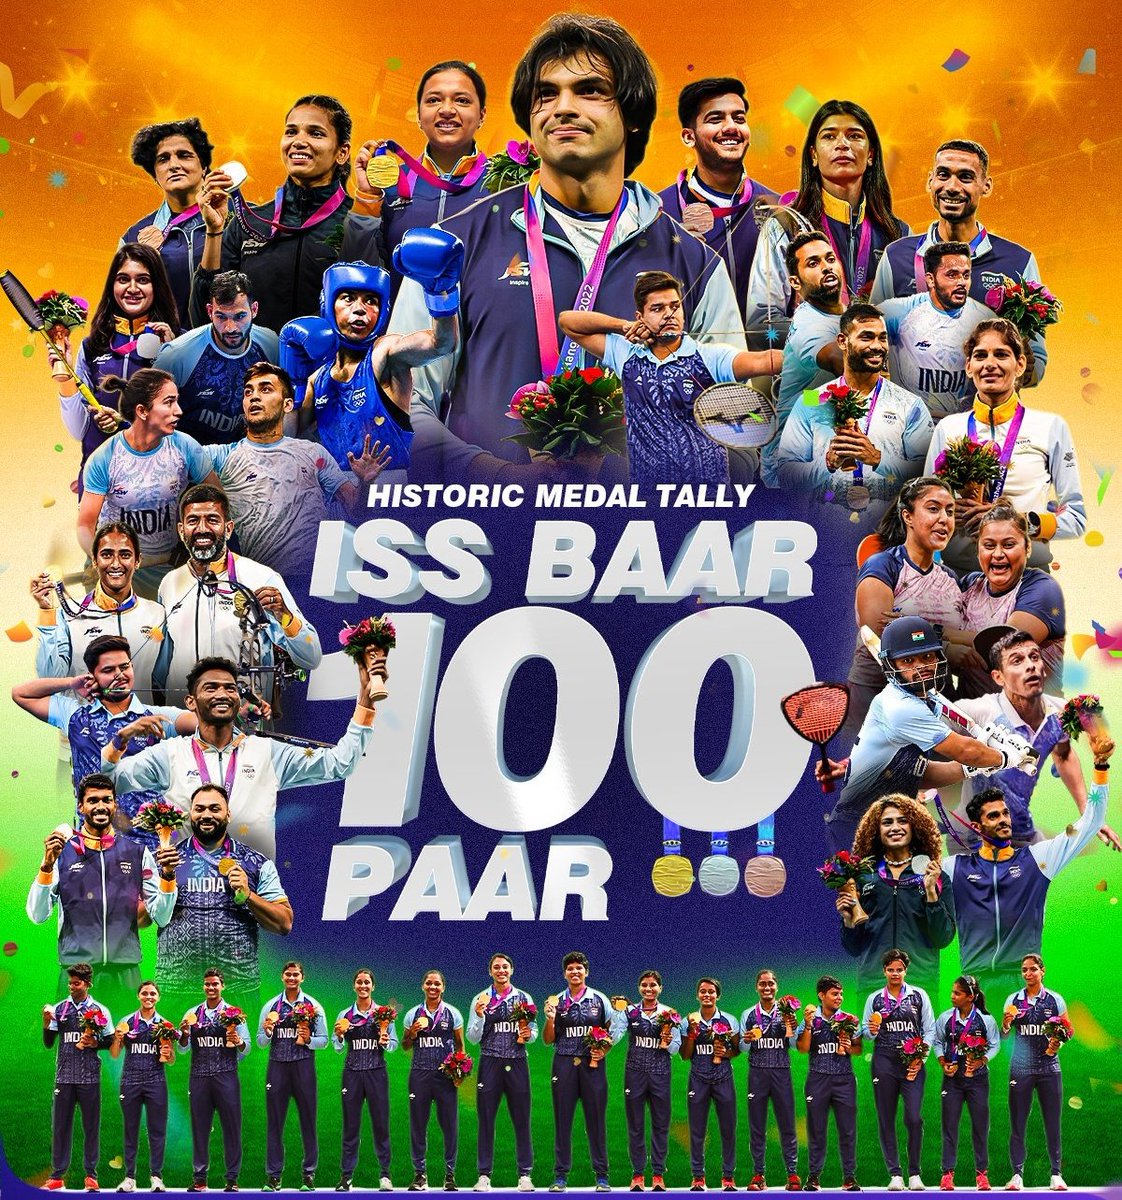 भारतीय इतिहास का स्वर्णिम दिन आज... स्वतंत्र भारत में पहली बार एशियन गेम्स में भारत ने जीते 100 पदक। आपके साहस , जज्बे , मेहनत और कौशल को मेरा सलाम है । 140 करोड़ भारतीयों के लिए गौरवान्वित करने वाले क्षण ... #AsianGames #AsianGames2023 @SmartSatna